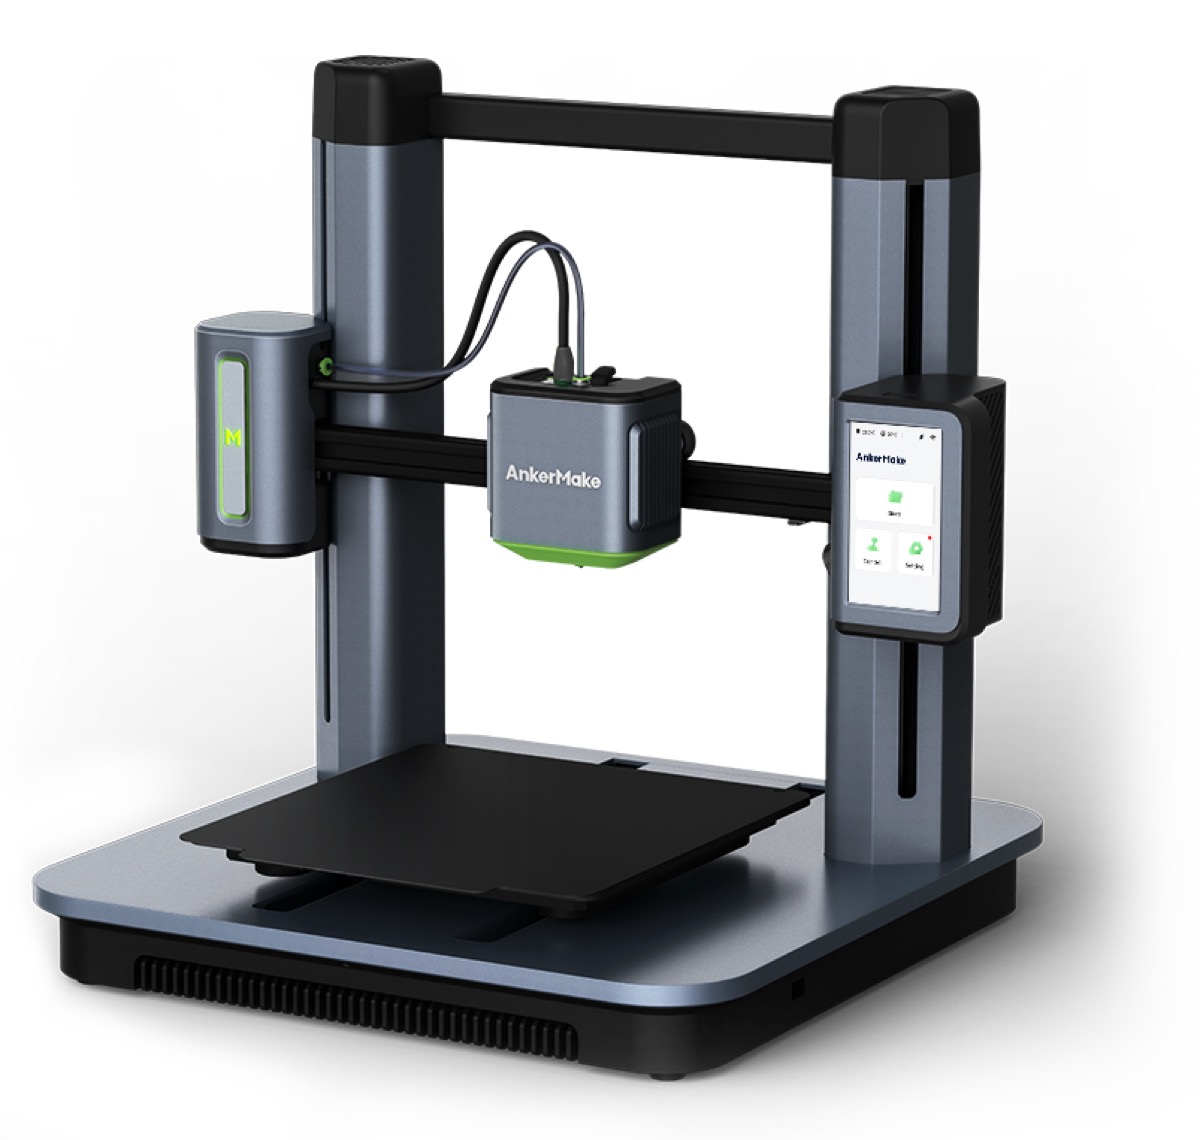 La stampante 3D AnkerMake M5 disponibile in Italia